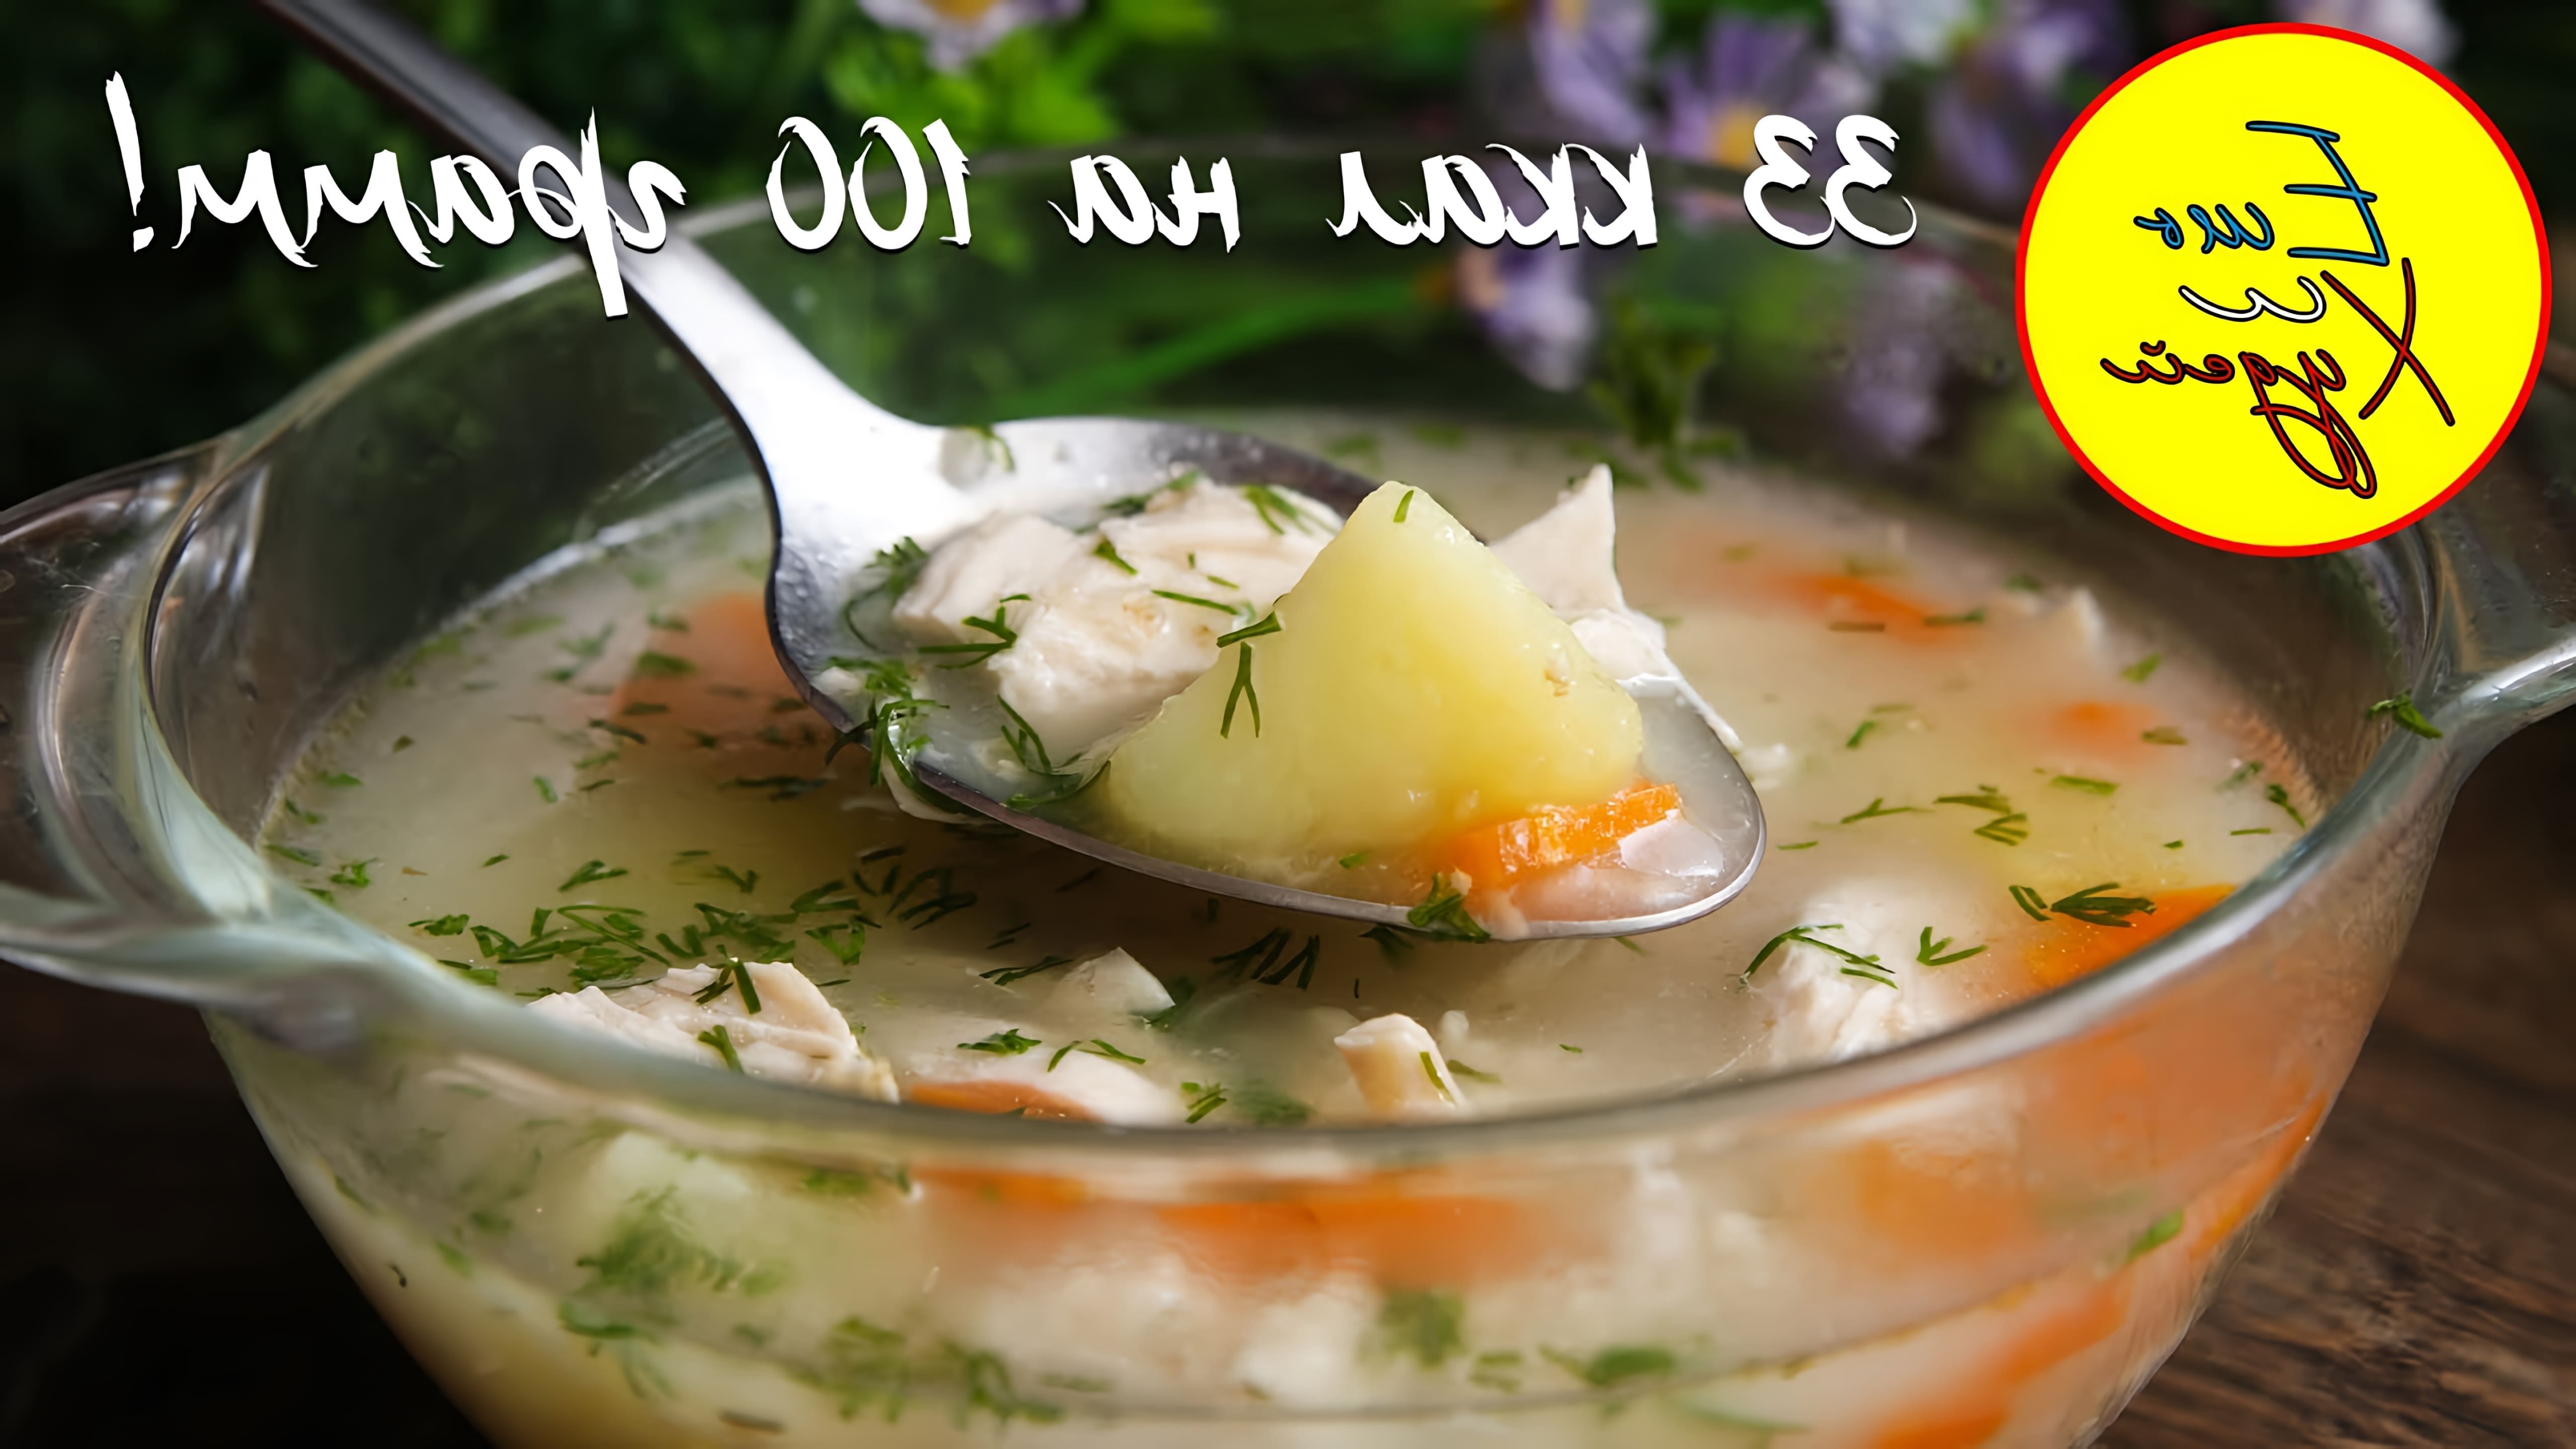 В этом видео демонстрируется рецепт легкого и полезного овсяного супа на курином бульоне